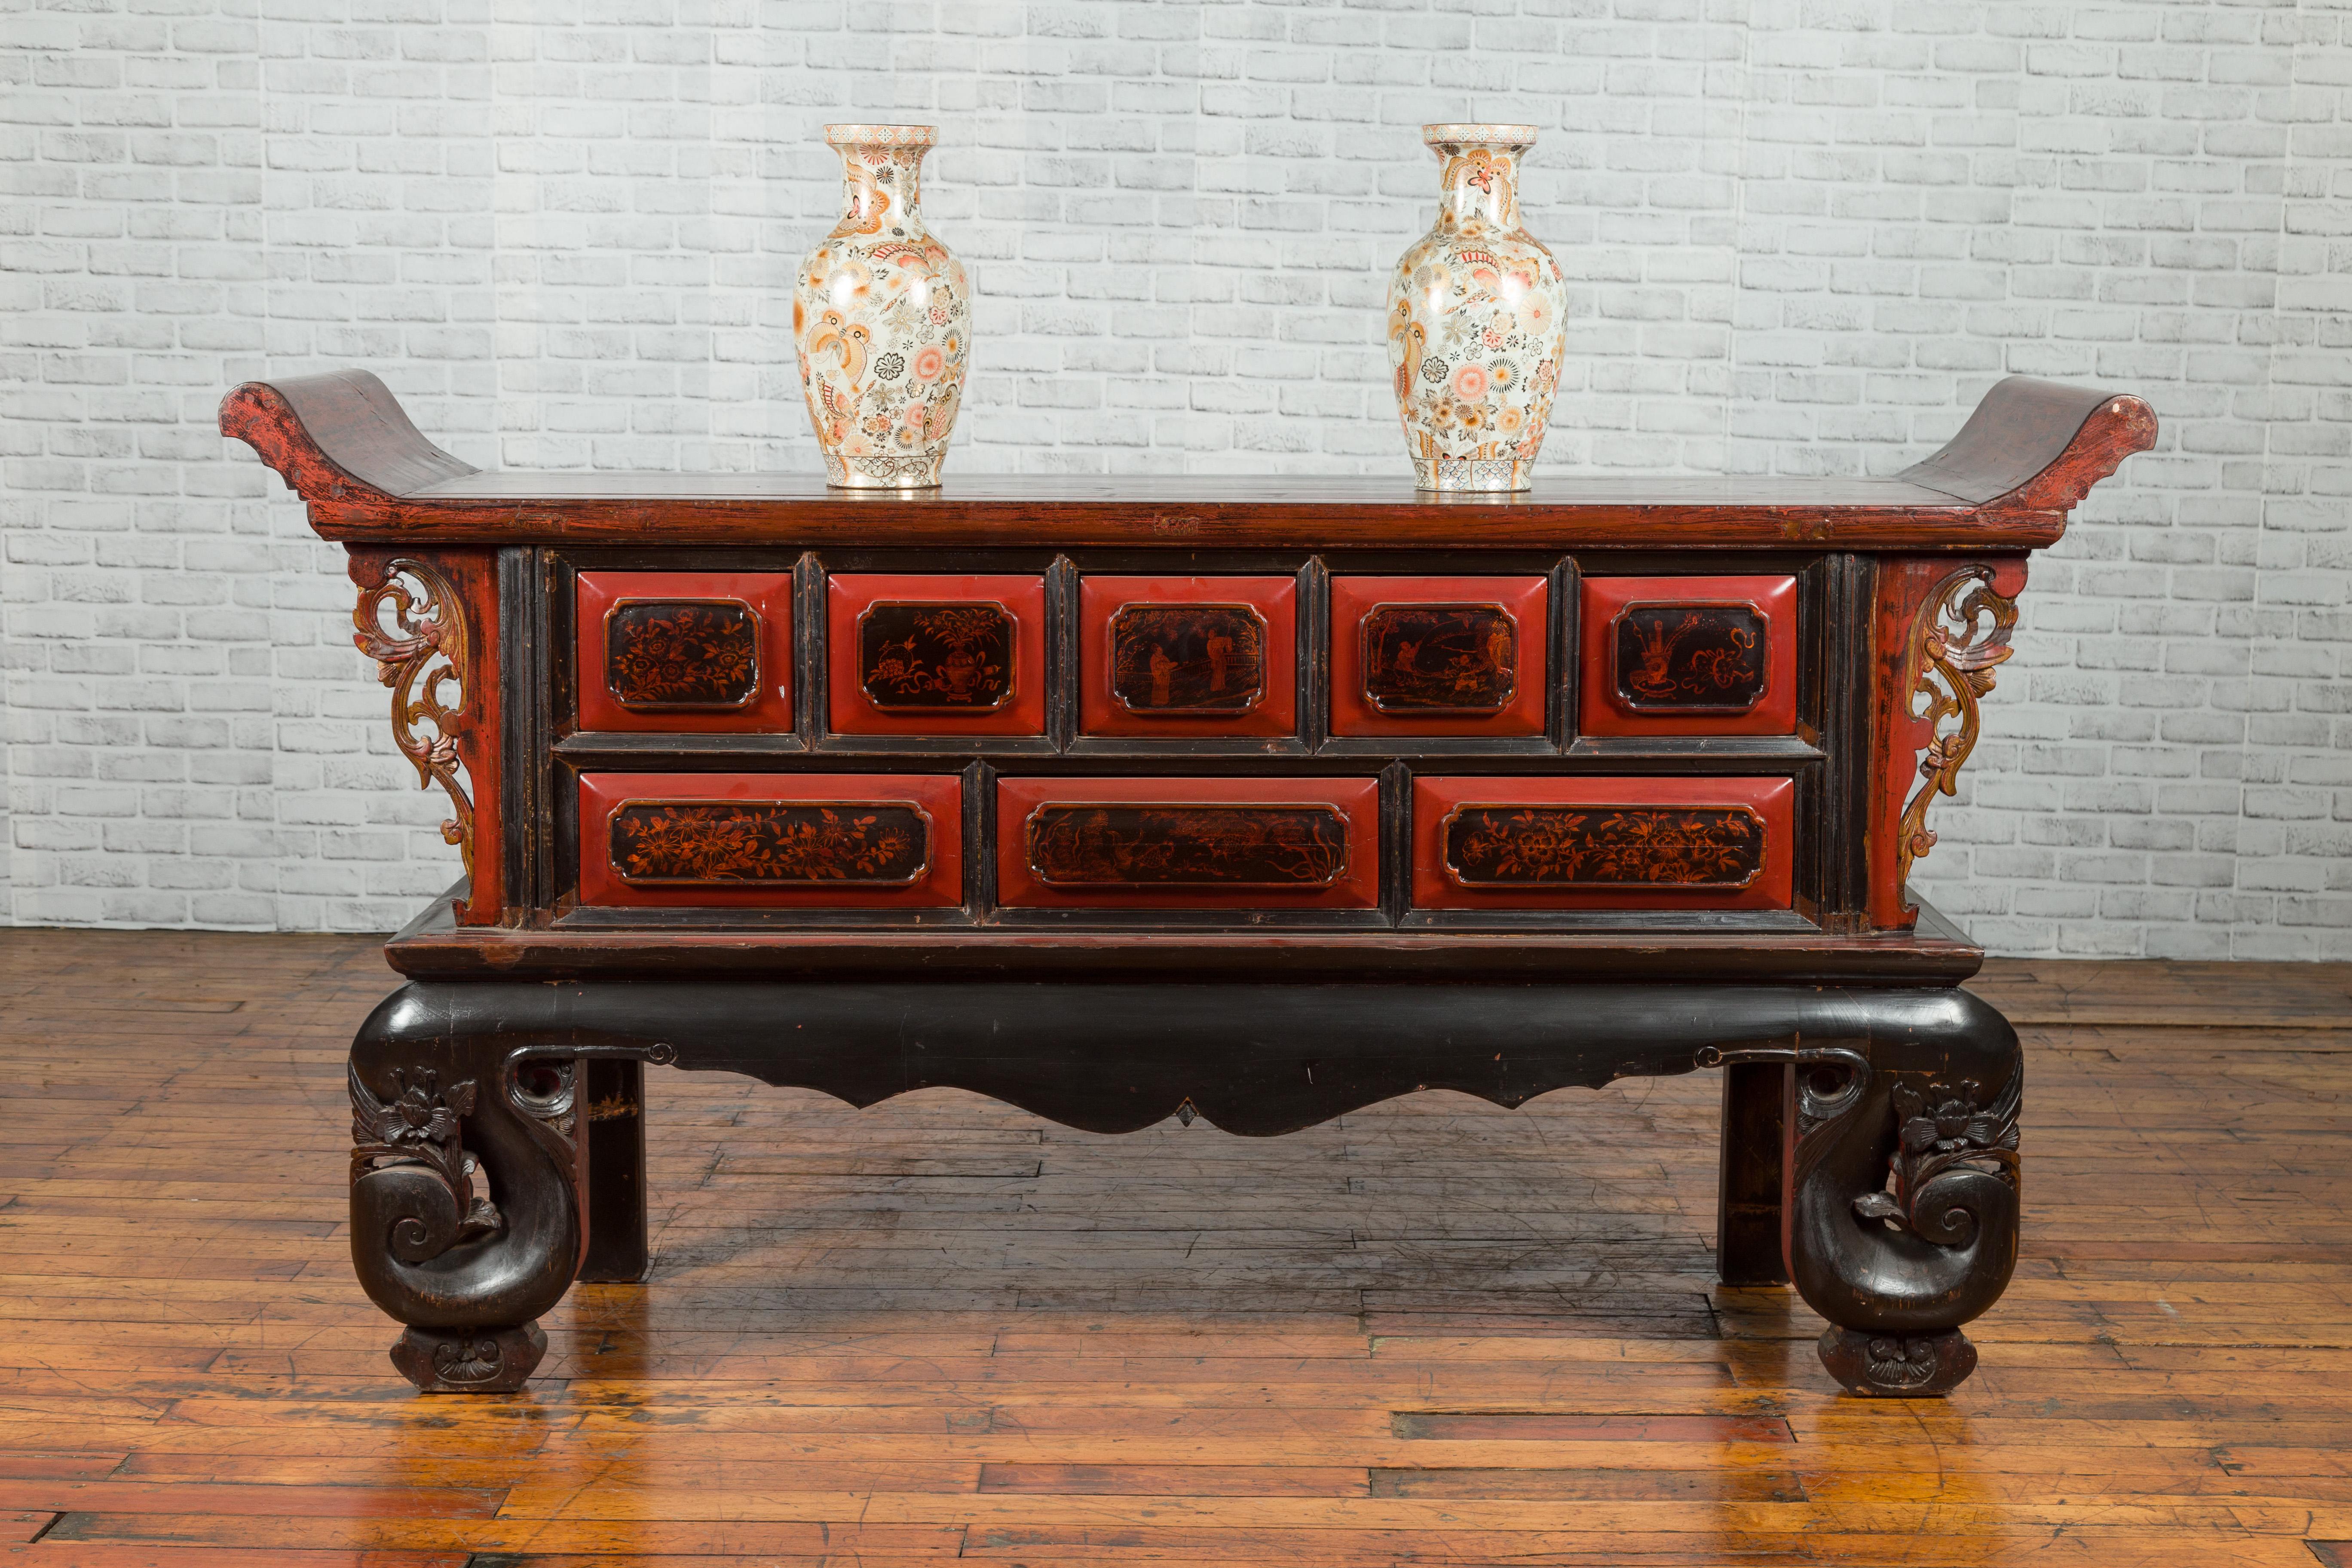 Table basse d'autel en laque rouge et noire du XIXe siècle, à motifs figuratifs et floraux, à rebords inversés et à pieds sculptés. Créée en Chine à l'époque de la dynastie Qing, au XIXe siècle, cette table-caisson d'autel, probablement utilisée